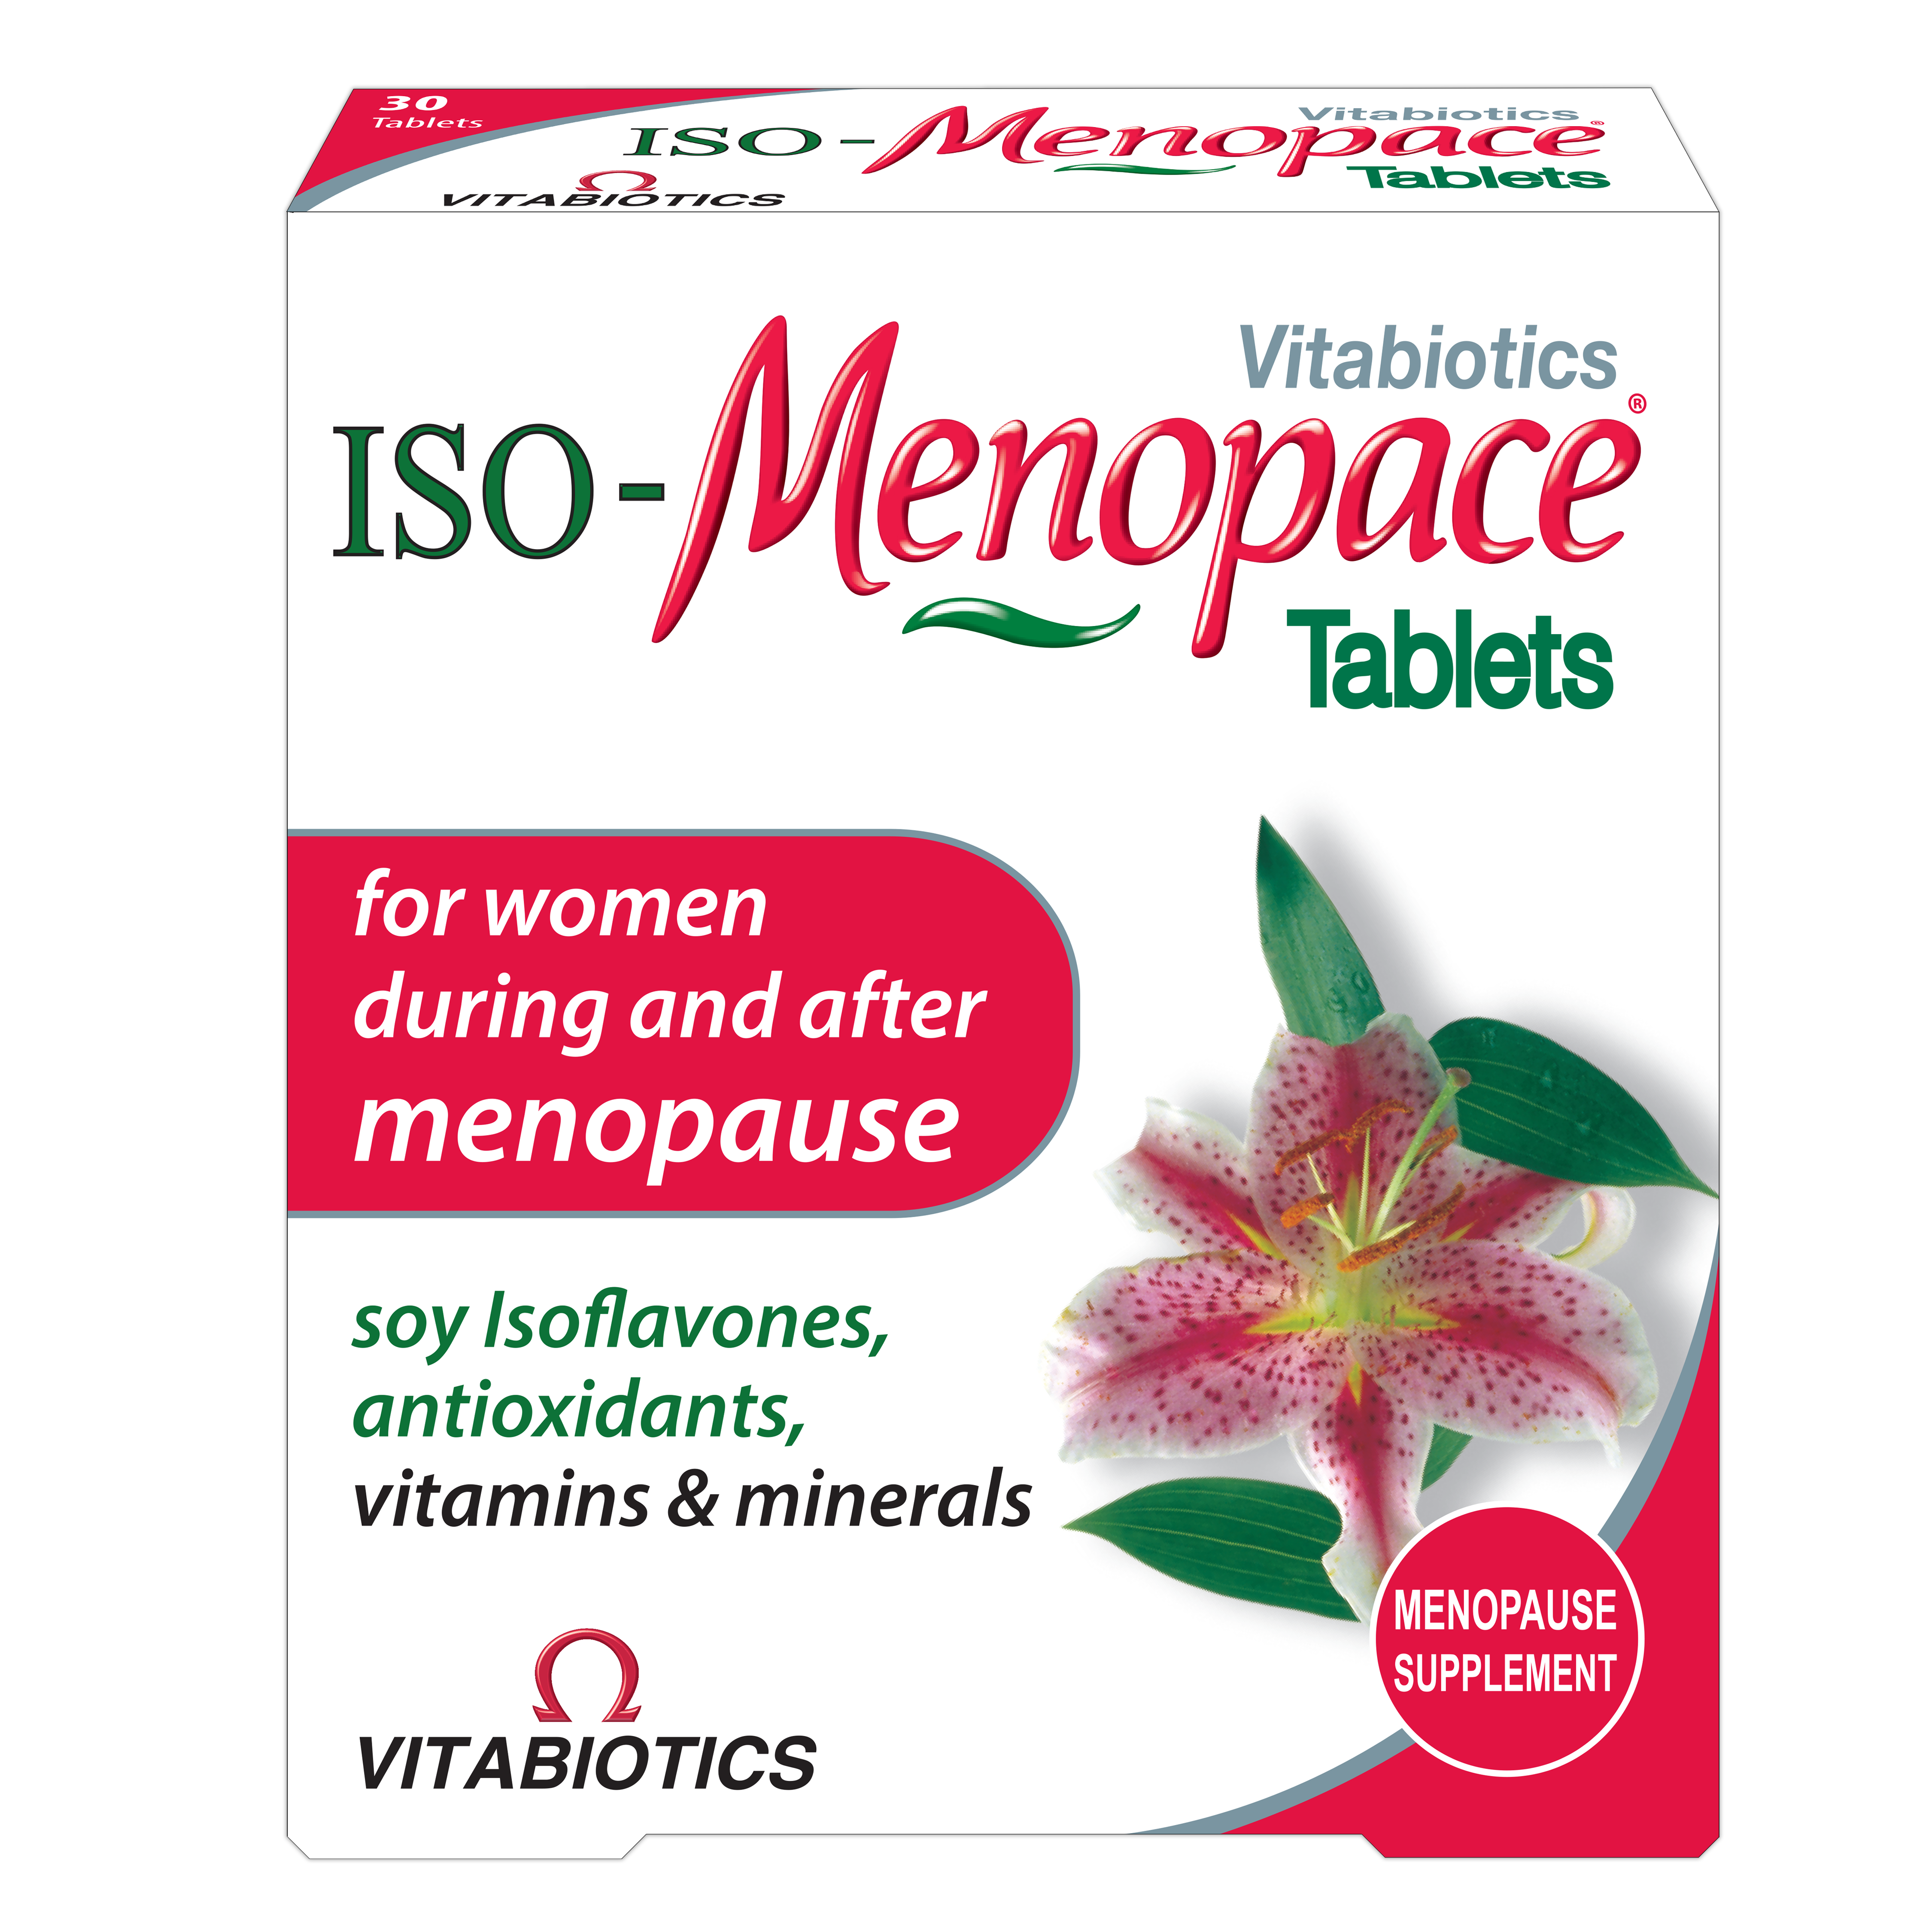 ISO-Menopace